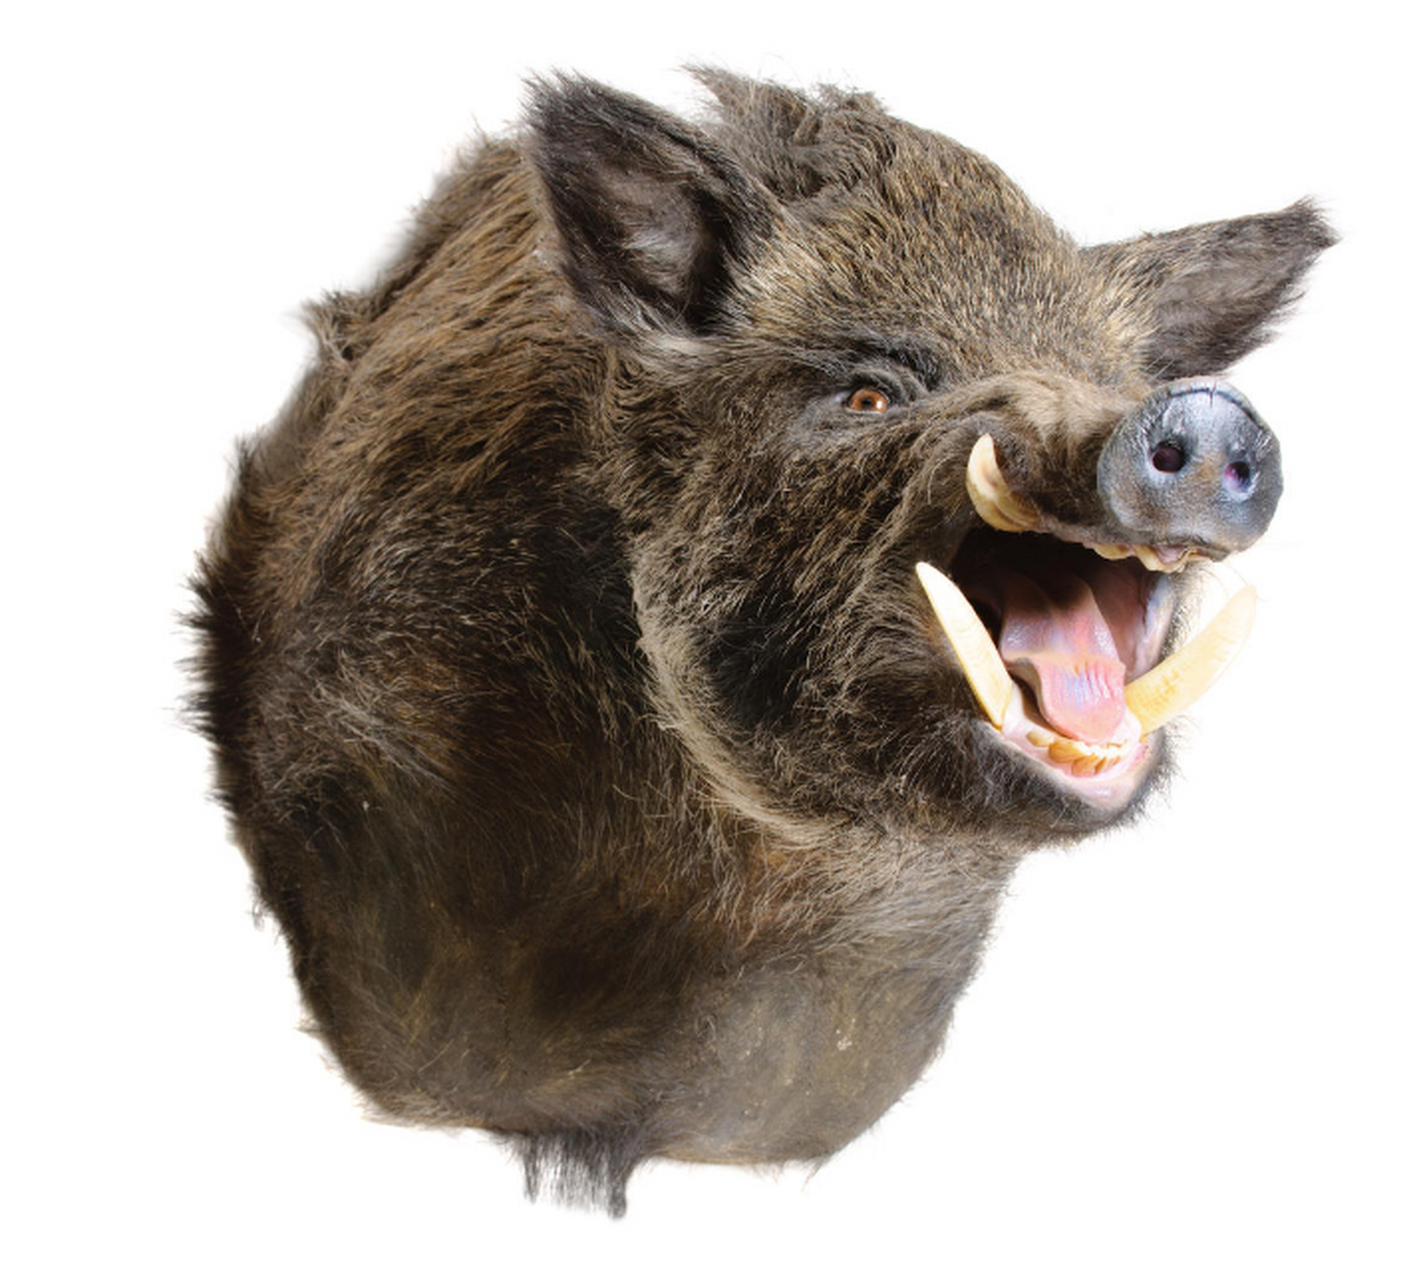 地球上最凶猛的动物 野猪 野猪体躯健壮,四肢粗短,头较长,耳小并直立